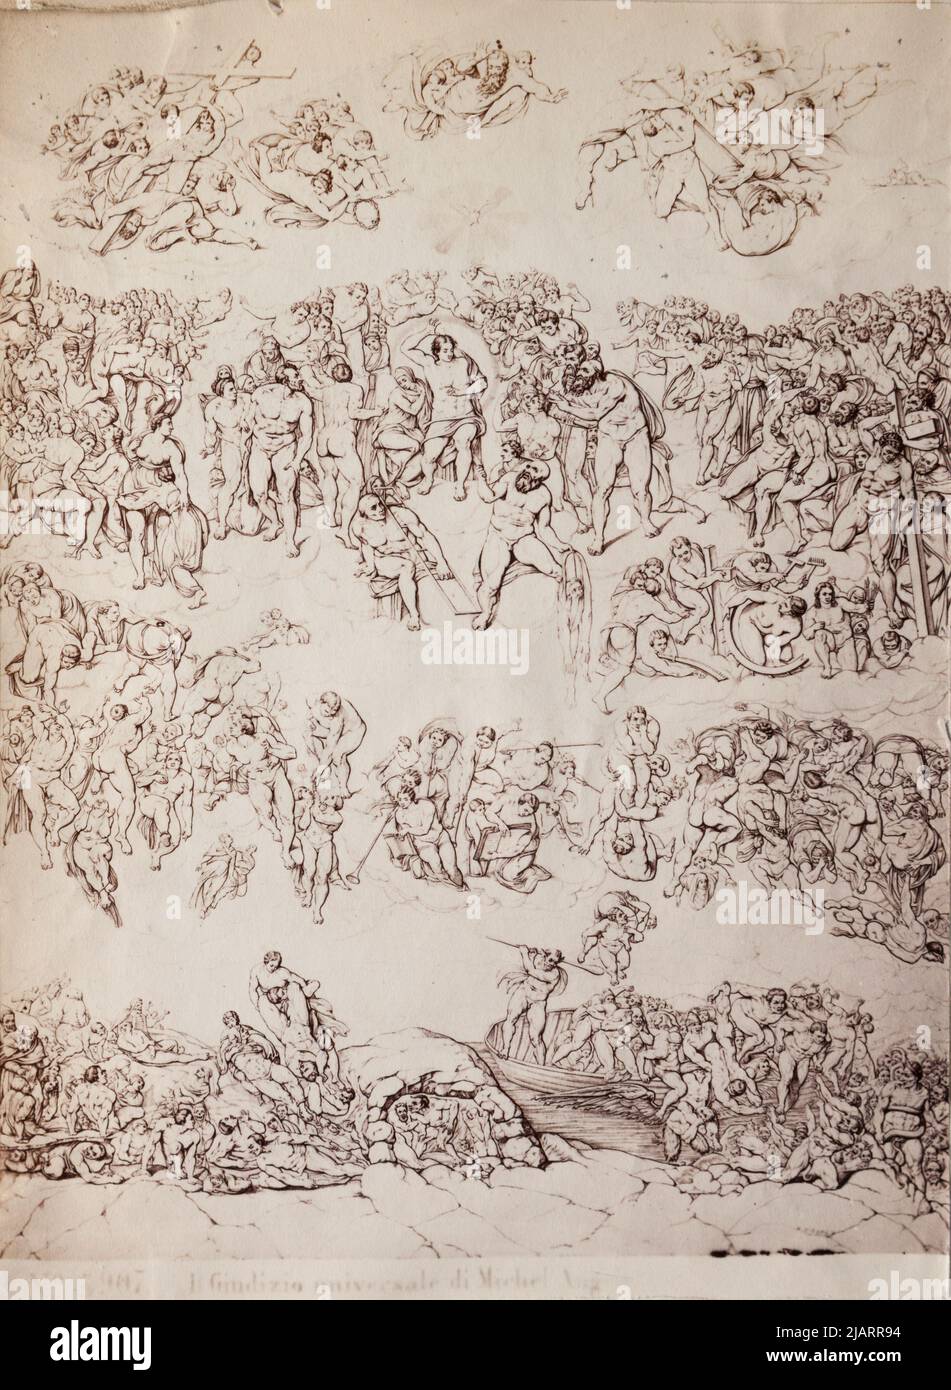 ROM Sixtinische Kapelle das jüngste Gericht Zeichnung Skizze für eine Polychromie von Michelangelo Buonarotti Summer, Giorgio (Georg) (1834 1914) Stockfoto